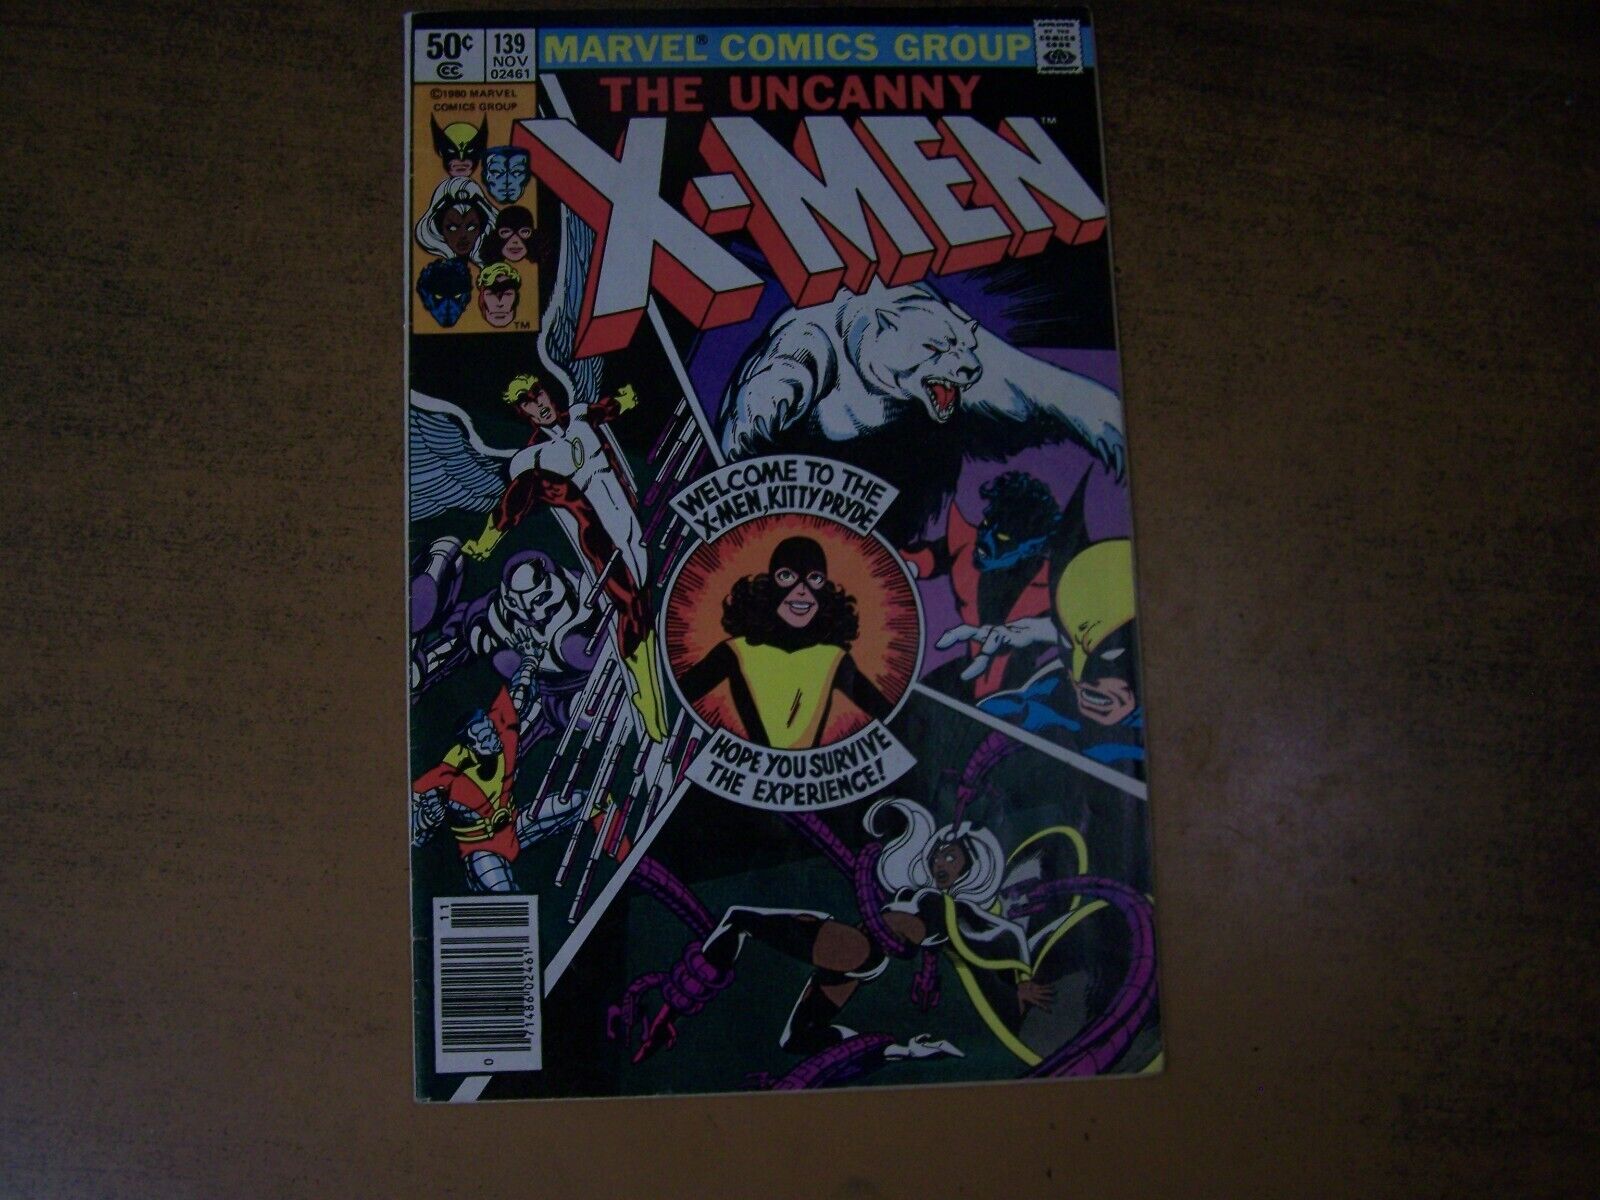 The Uncanny X-men 139